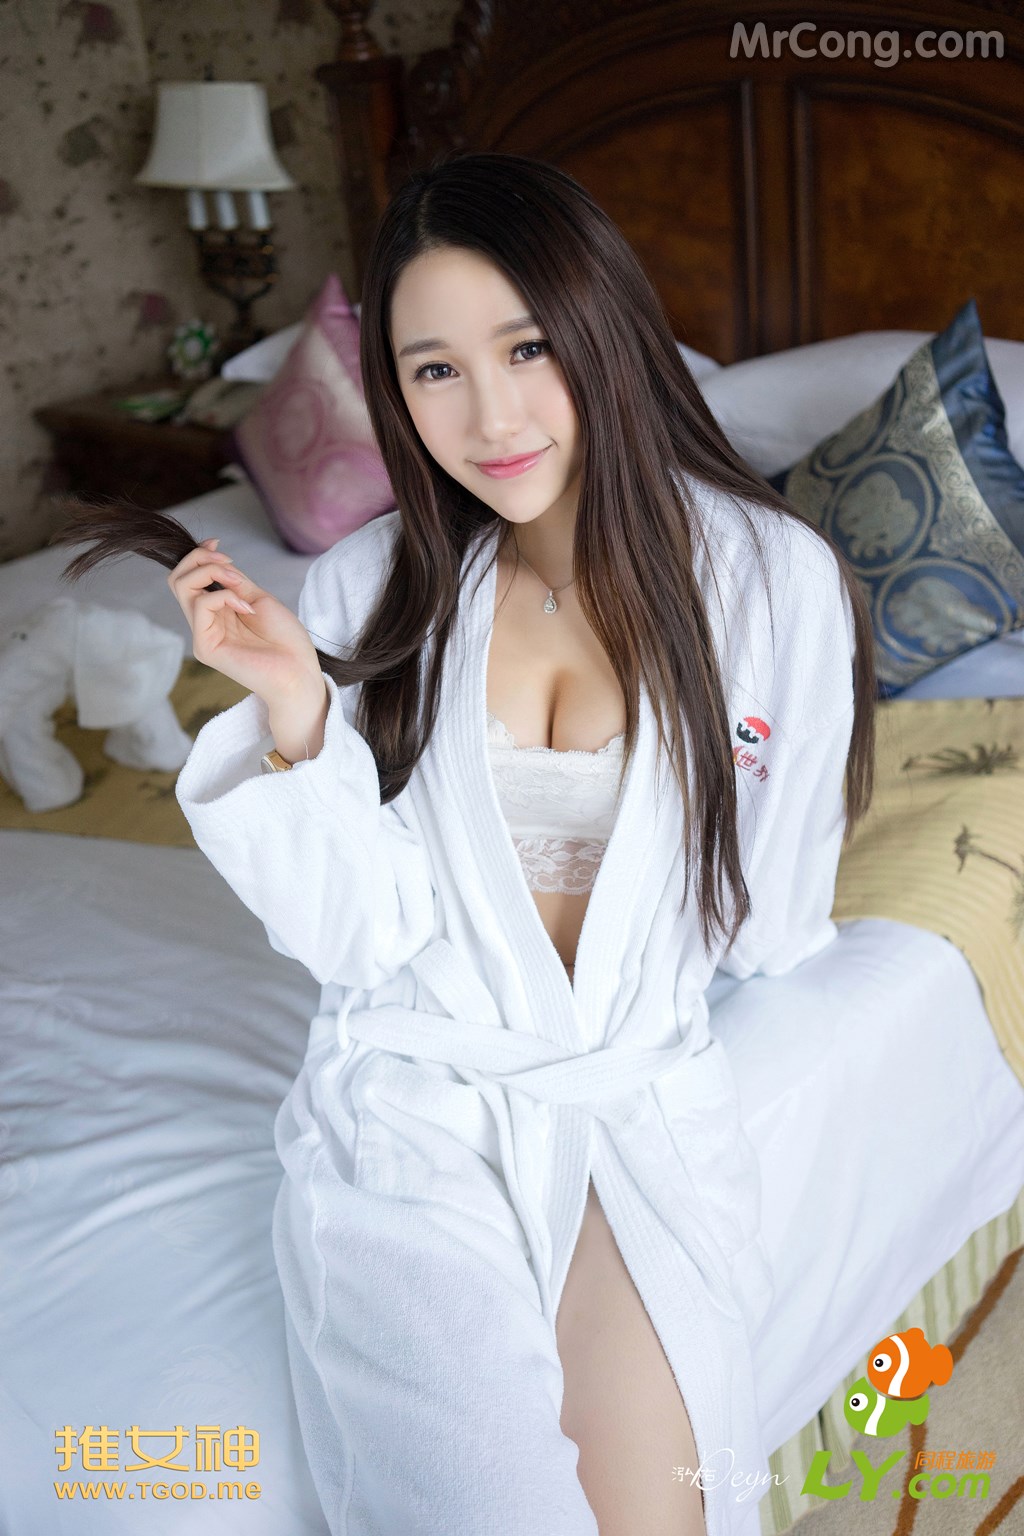 TGOD 2014-09-17: Model Lynn (刘 奕宁) (63 photos) photo 1-15